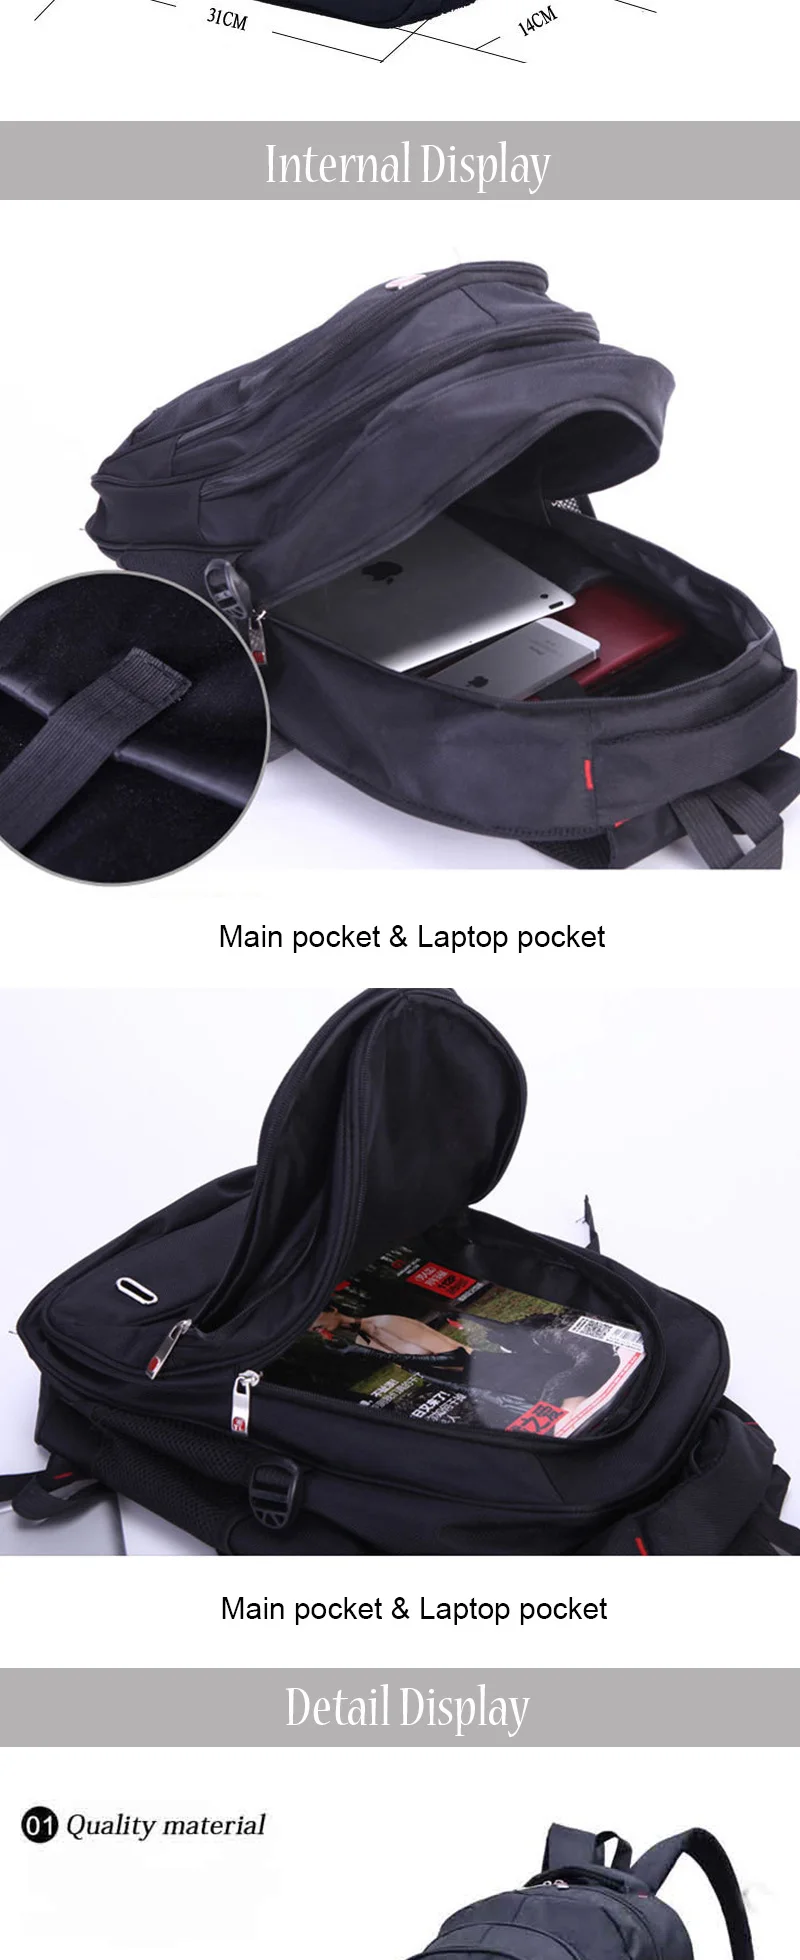 Chuwanglin рюкзак для ноутбука, мужские дорожные рюкзаки, Многофункциональный нейлоновый черный рюкзак, школьные сумки для подростков, женские сумки ZDD2181